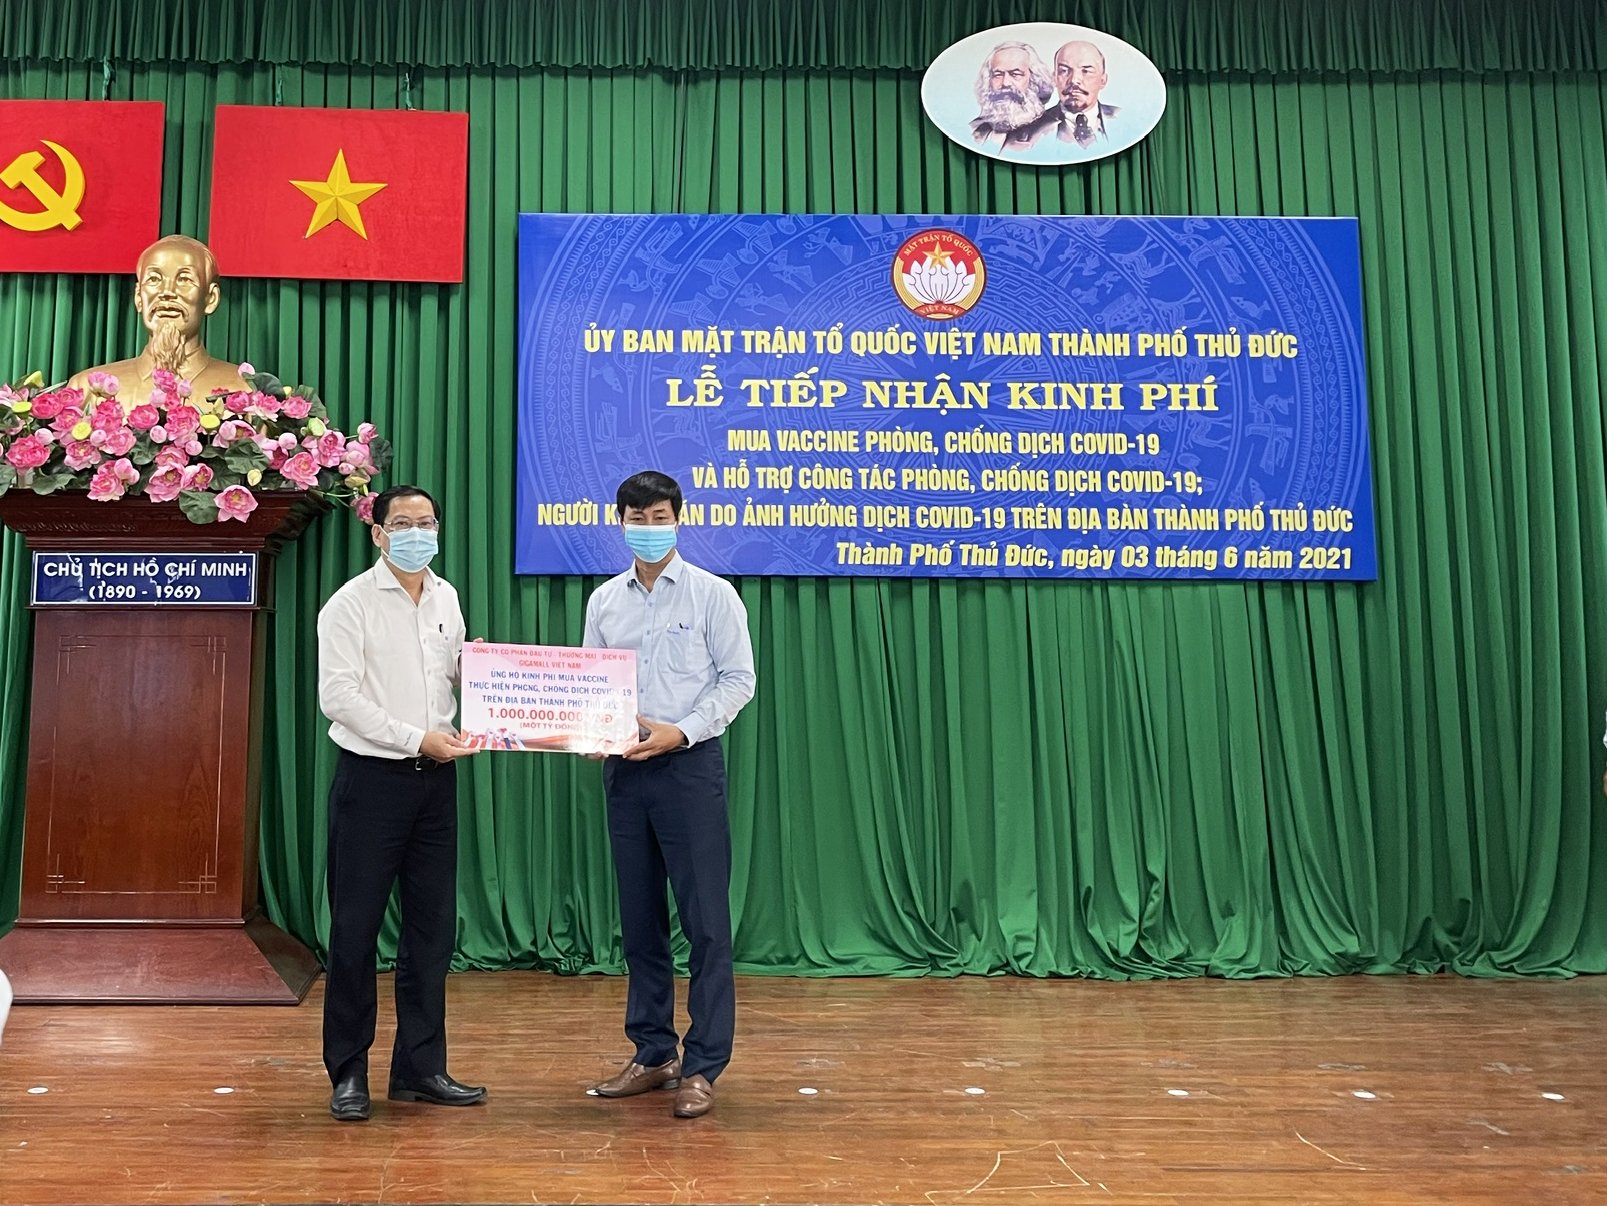 Đại diện Công ty Cổ phần Đầu tư TMDV Gigamall Việt Nam ủng hộ kinh phí vào Quỹ mua Vaccine phòng Covid-19 của Uỷ ban Mặt trận Tổ quốc Việt Nam TP Thủ Đức.